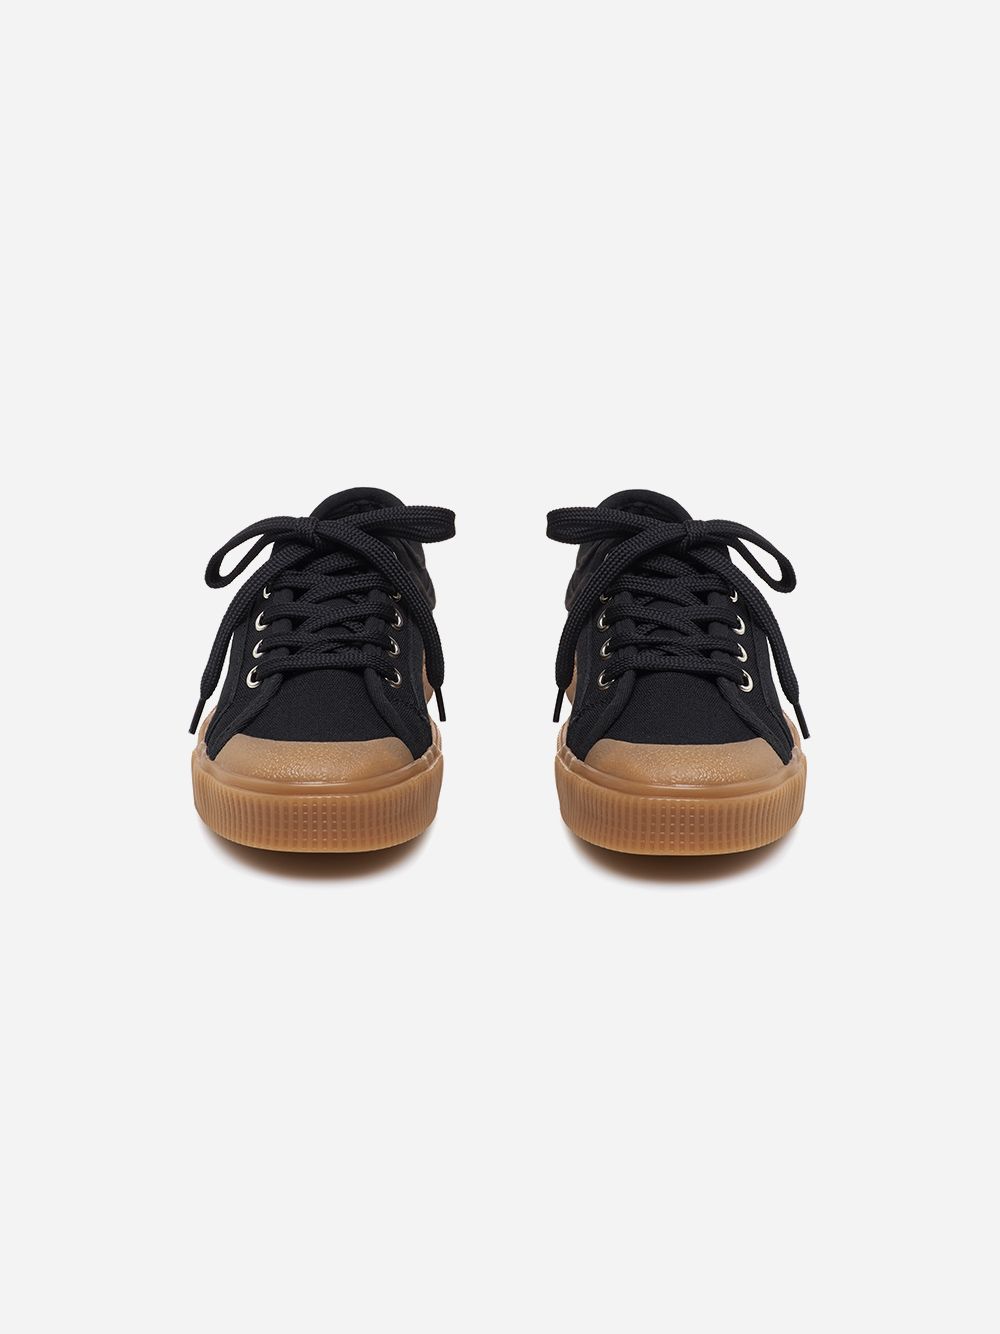 Black & Caramel K200 Sneakers | Sanjo